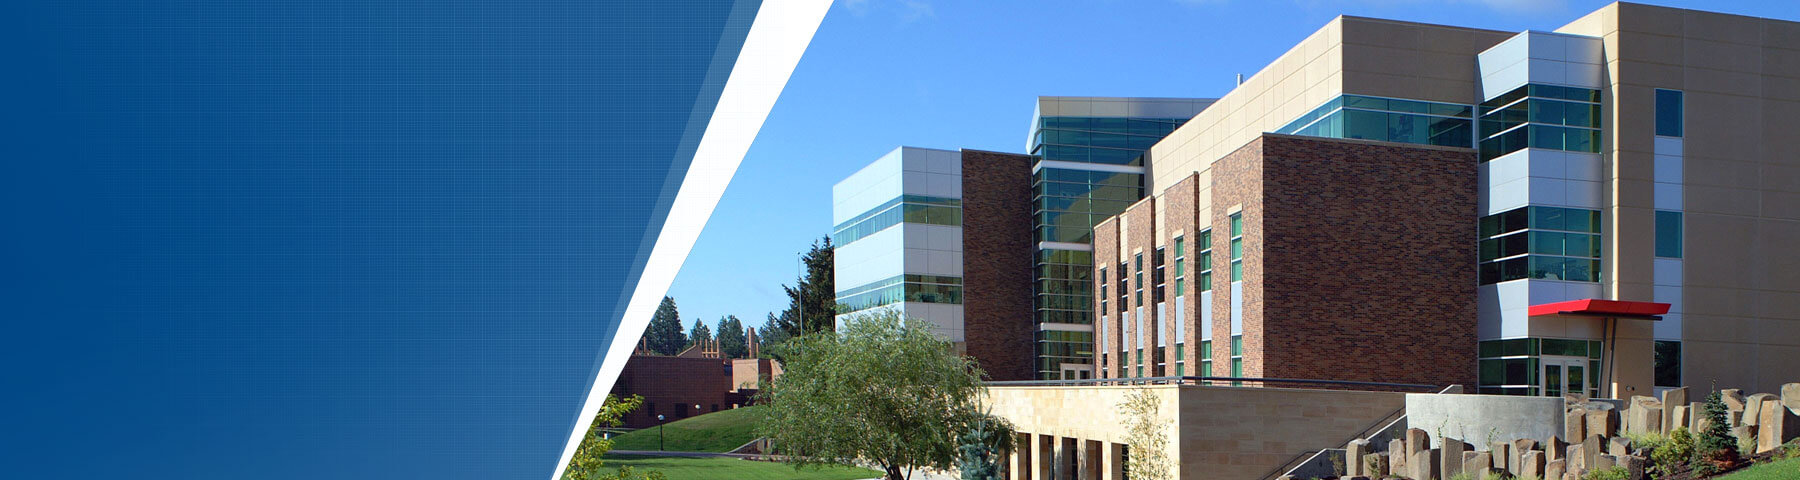 Eastern Washington University - CEB